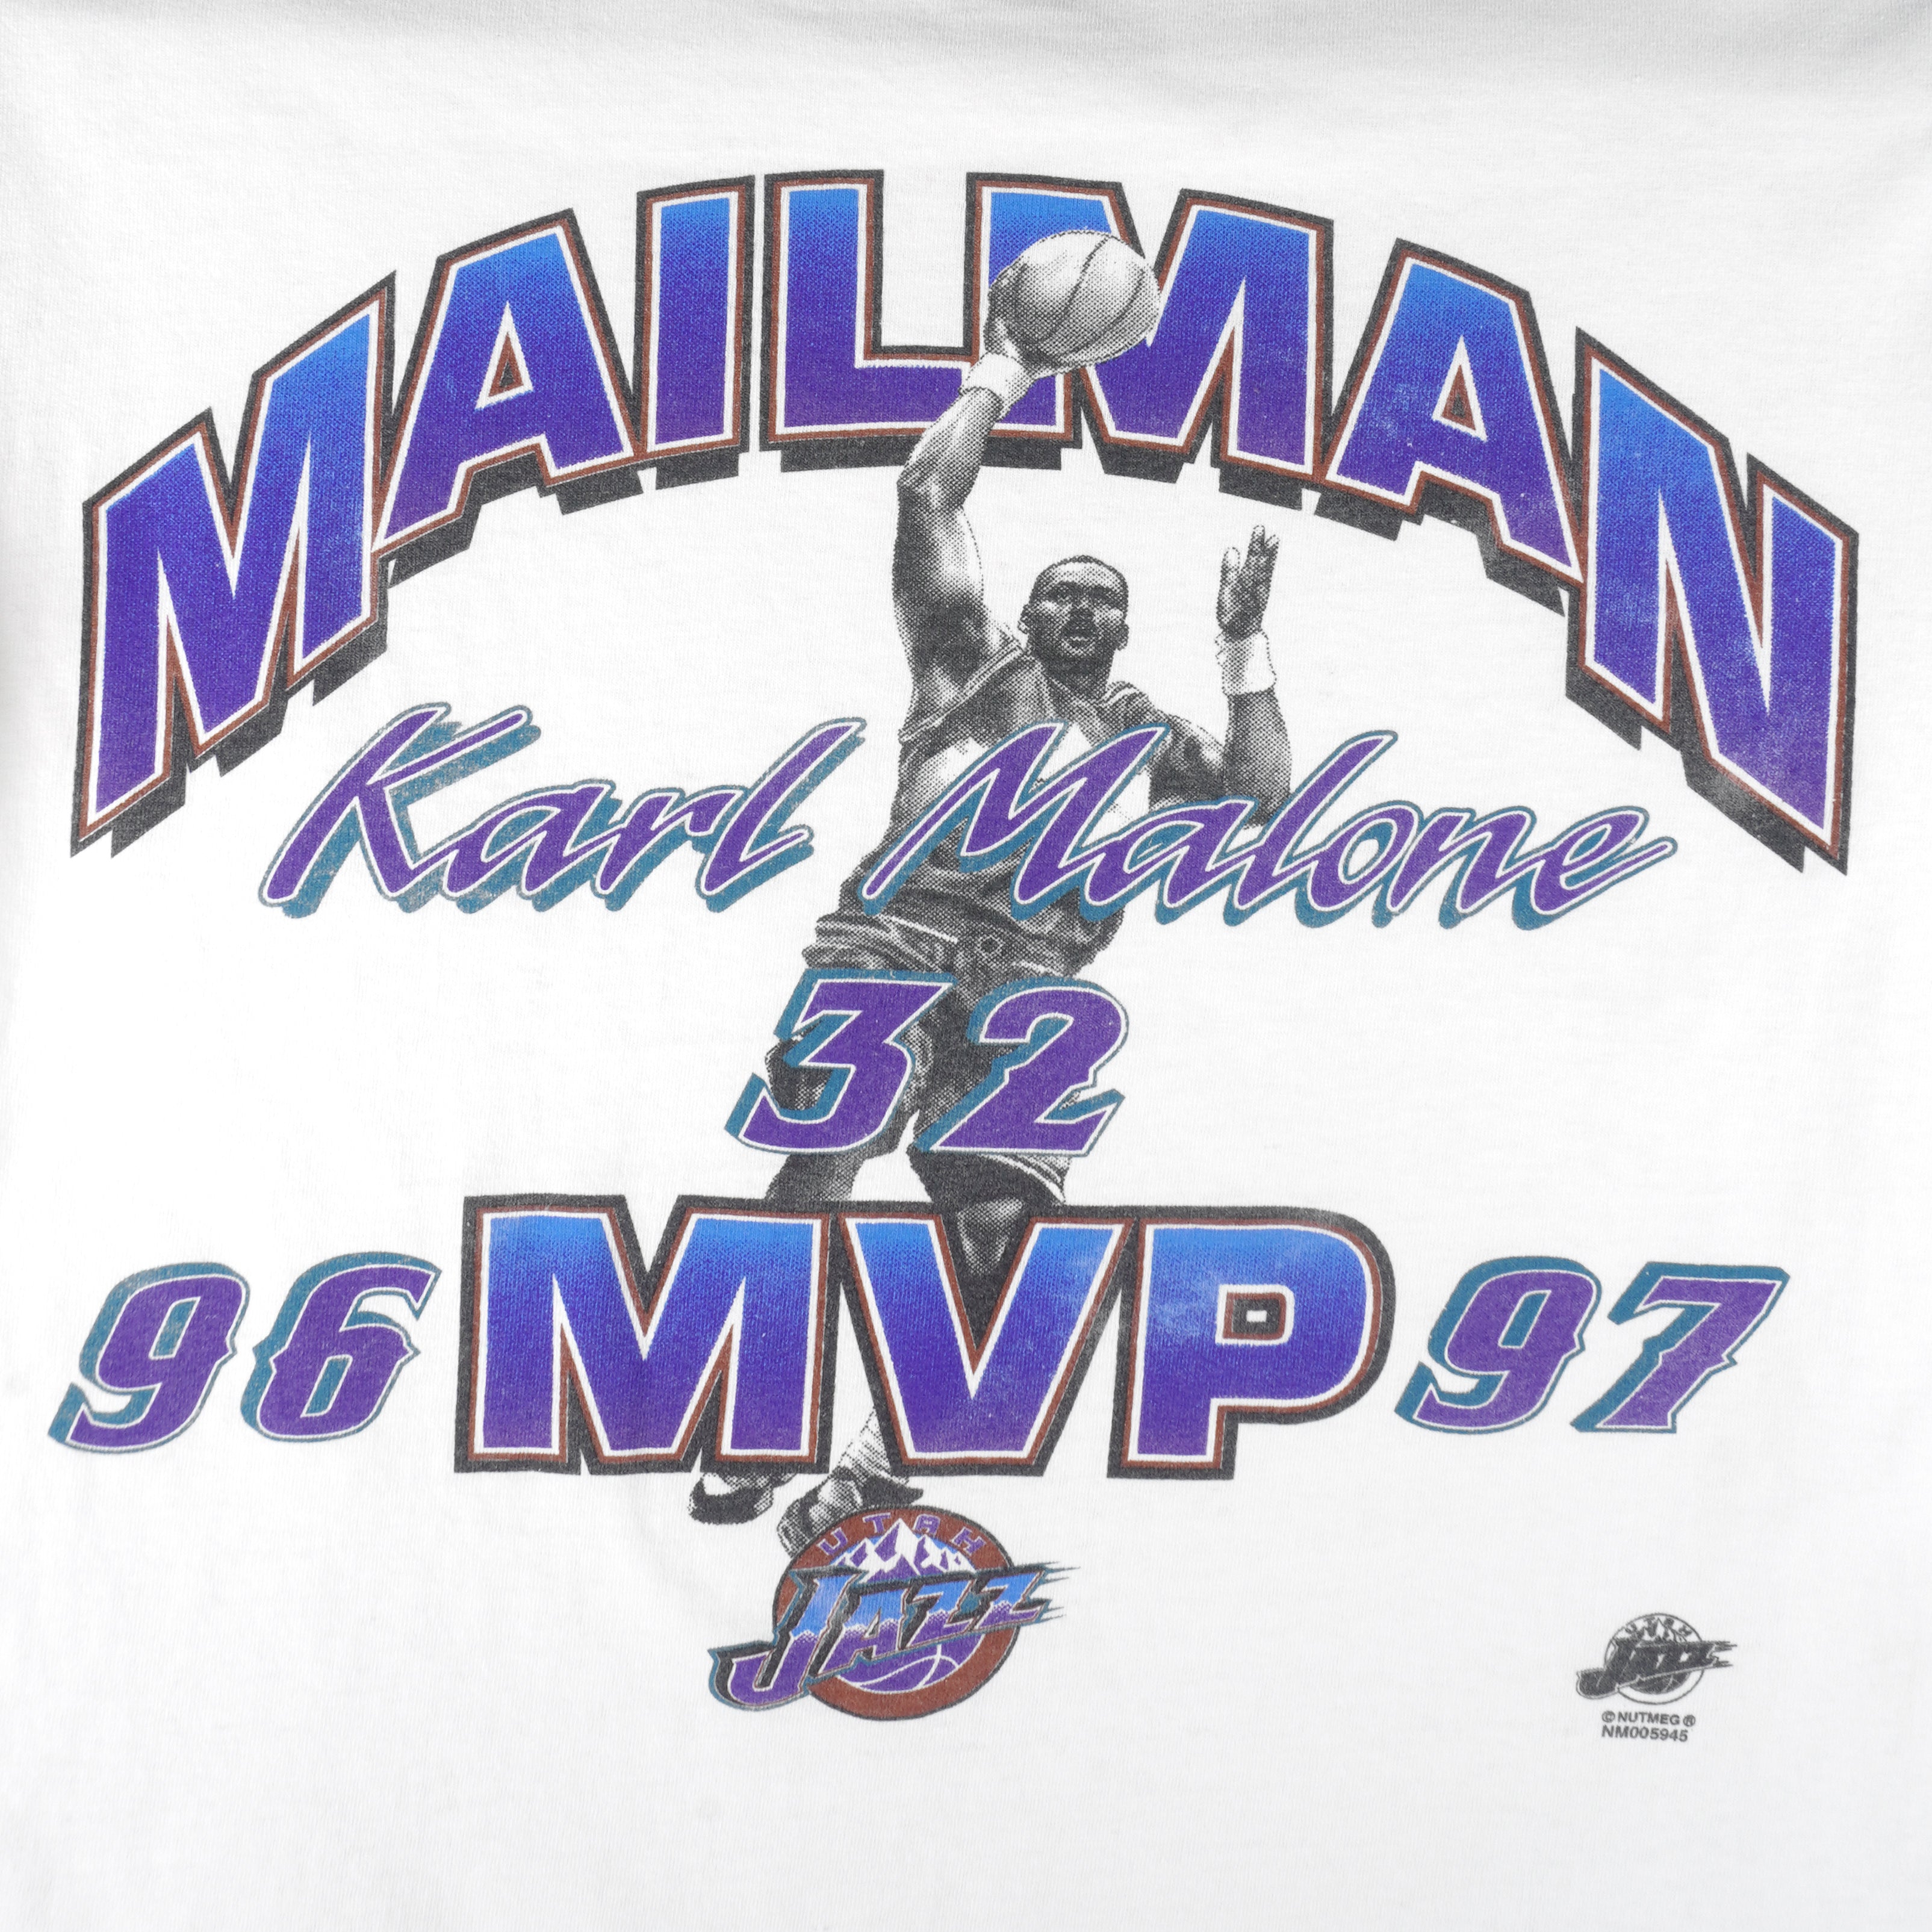 Utah Jazz rare 90s champion basketball jersey., Karl